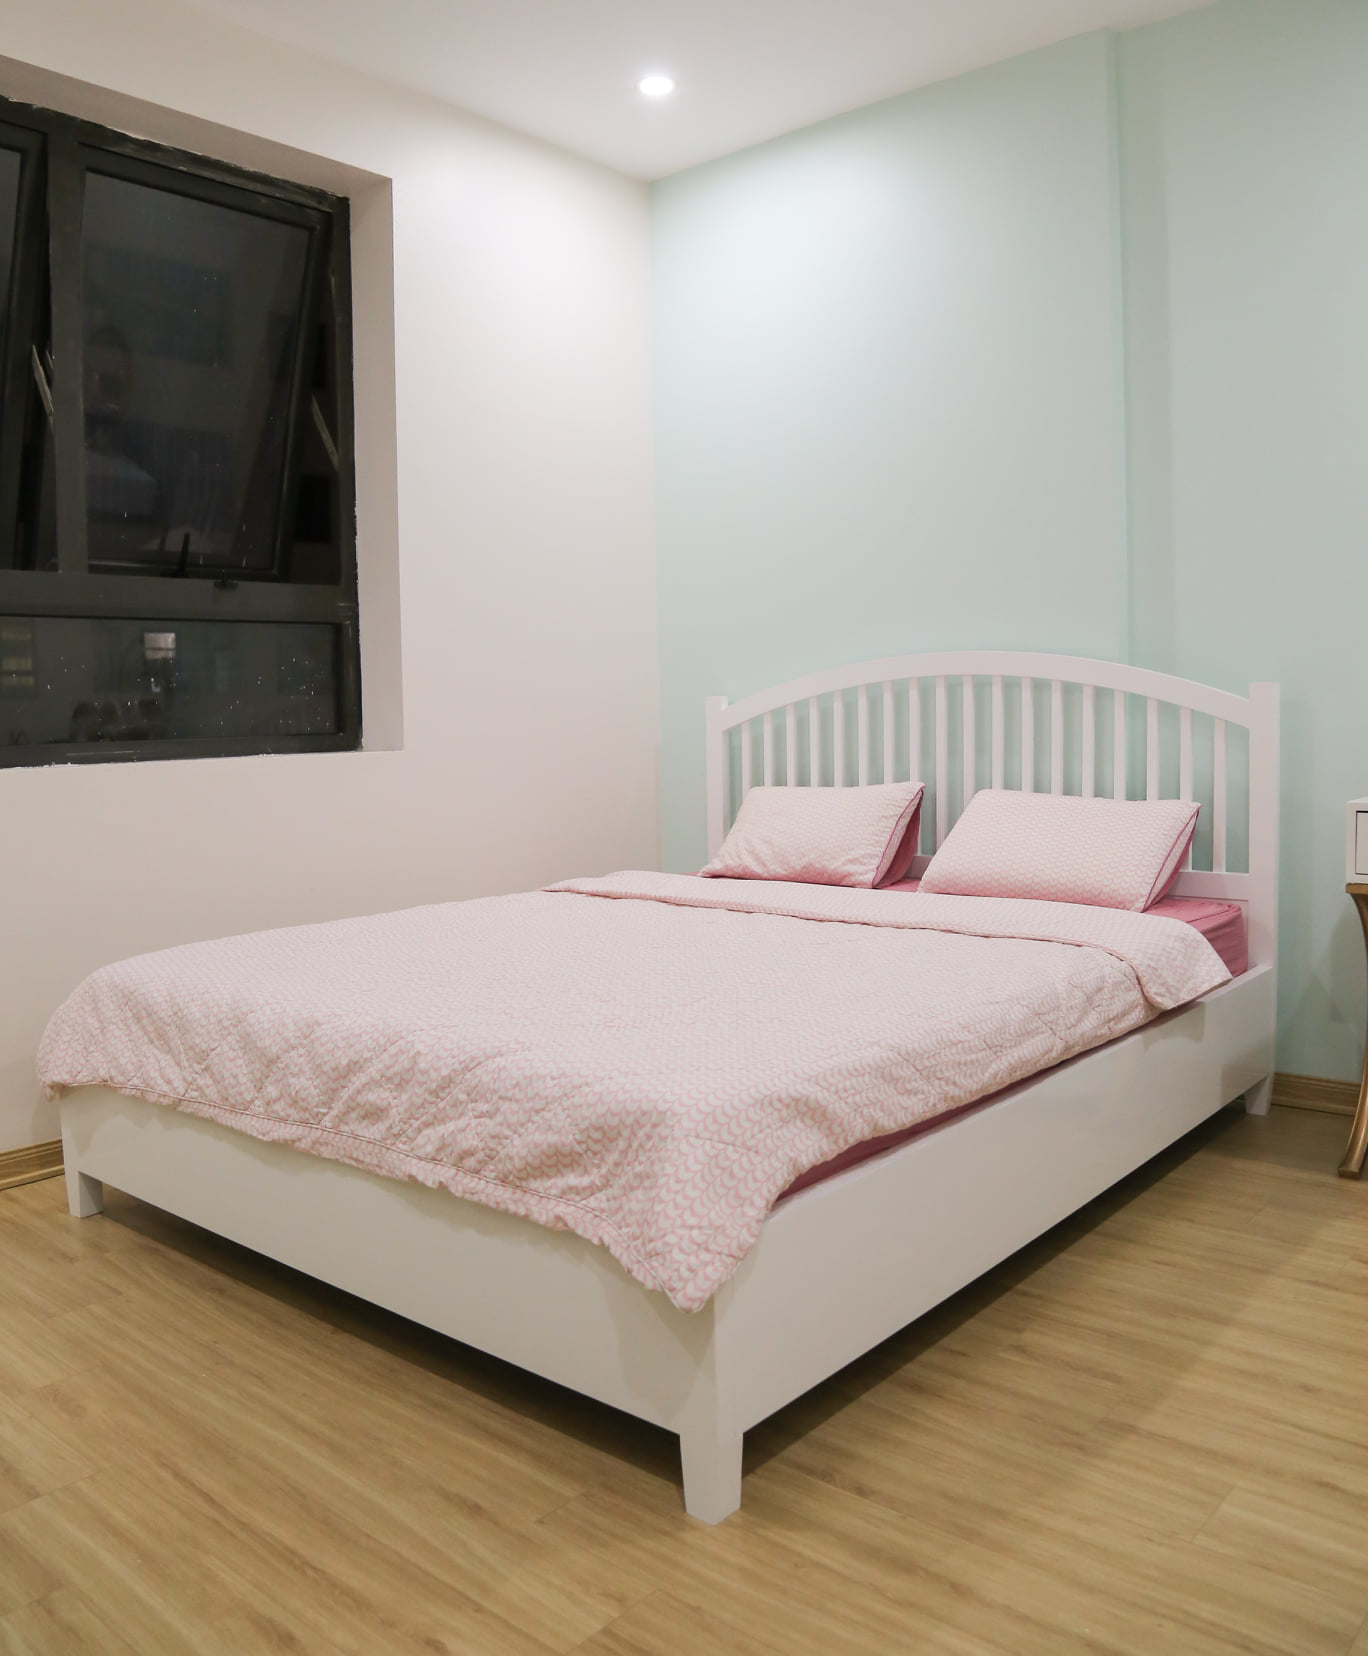 Chiếc giường màu trắng, thiết kế tối giản chi tiết để không rối mắt.